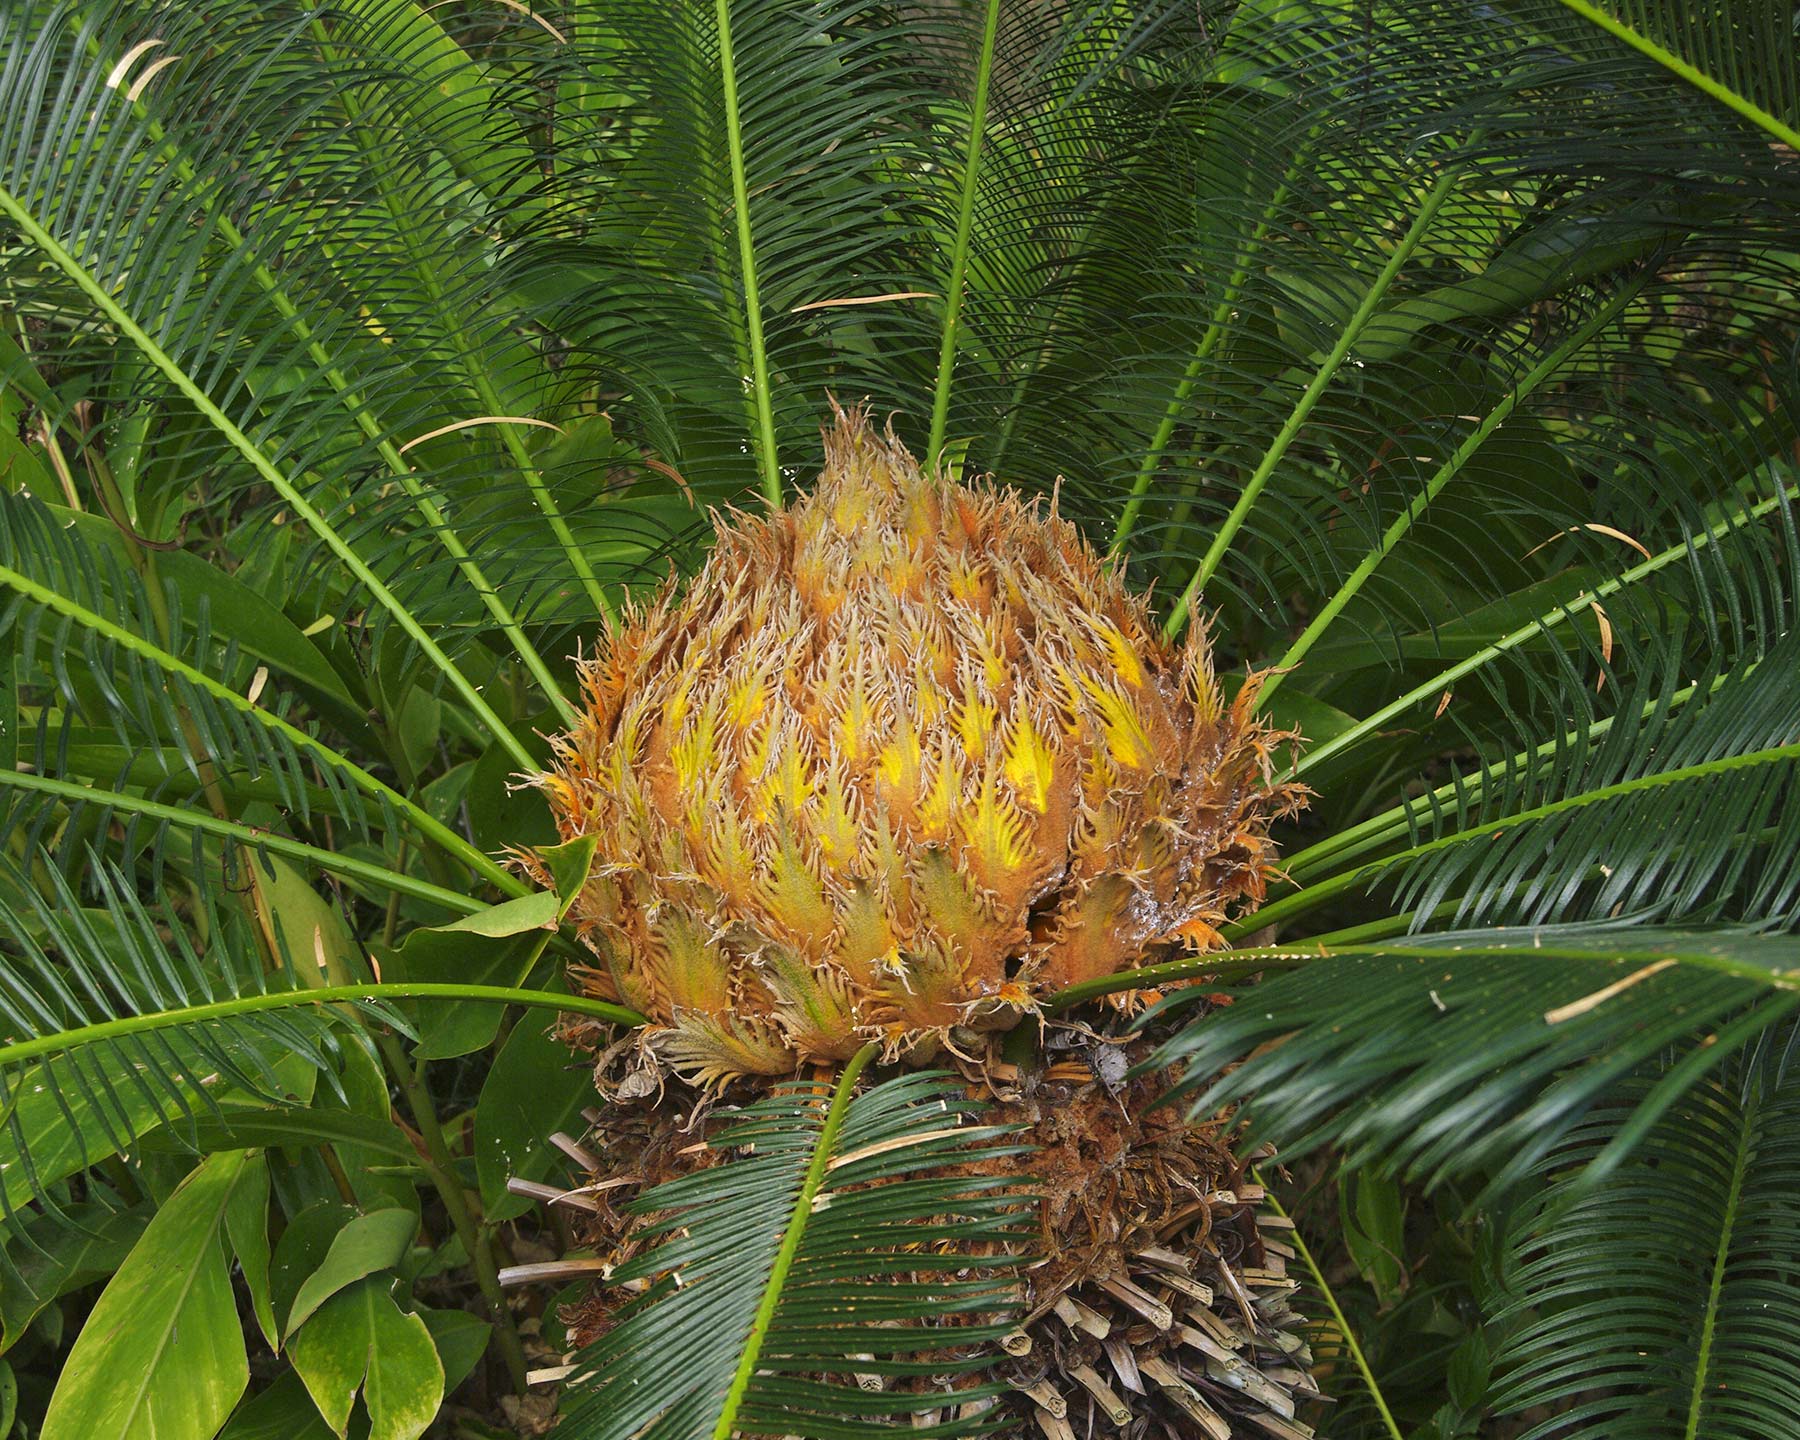 Cycas revoluta, the Sago Palm